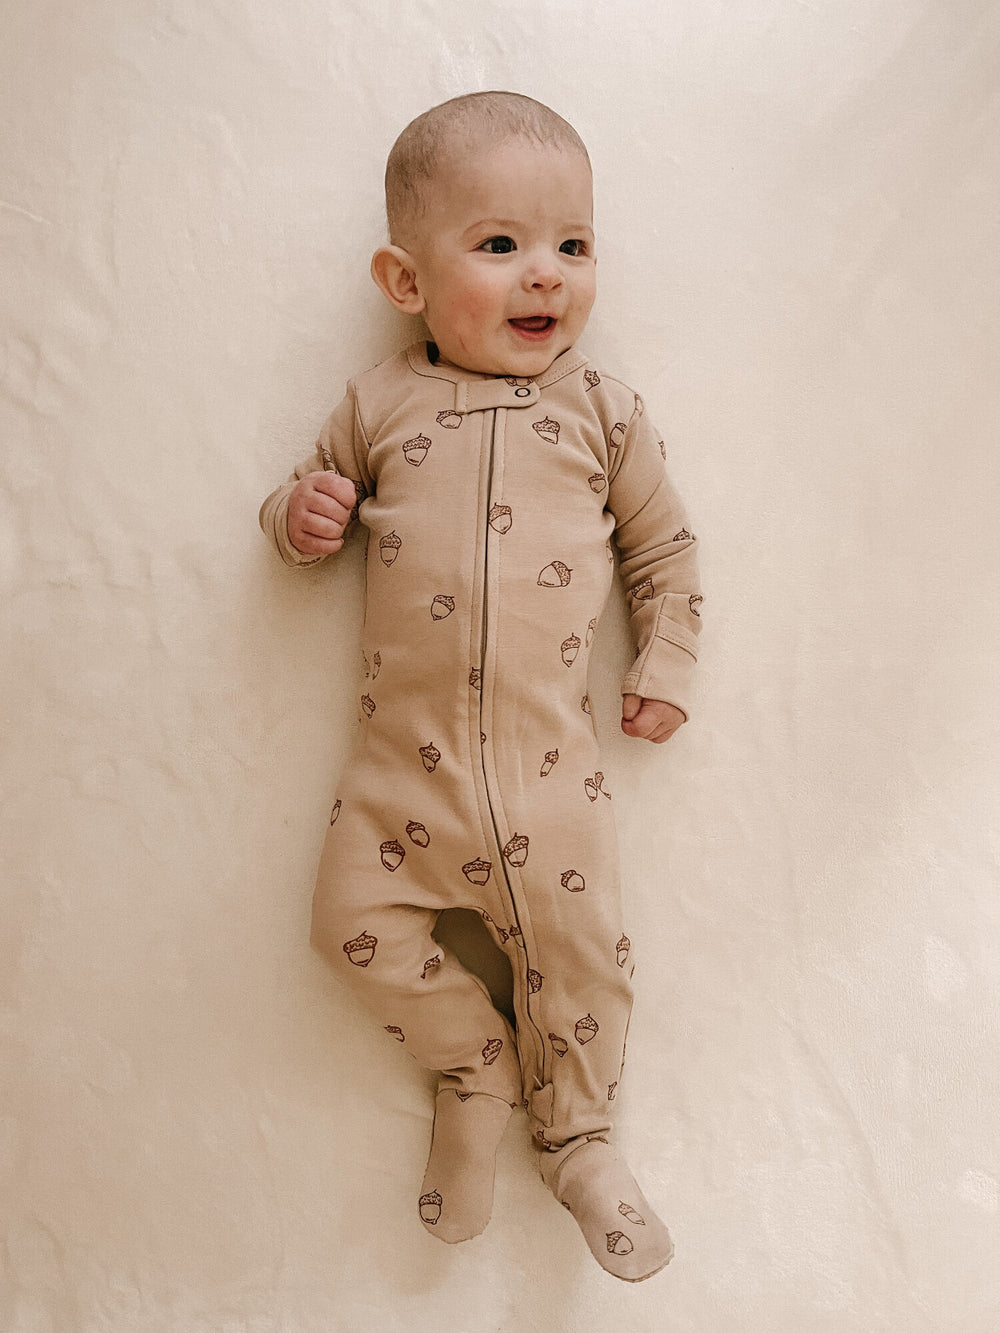 Child wearing Organic Zipper Footie, Print in Oatmeal Acorn.